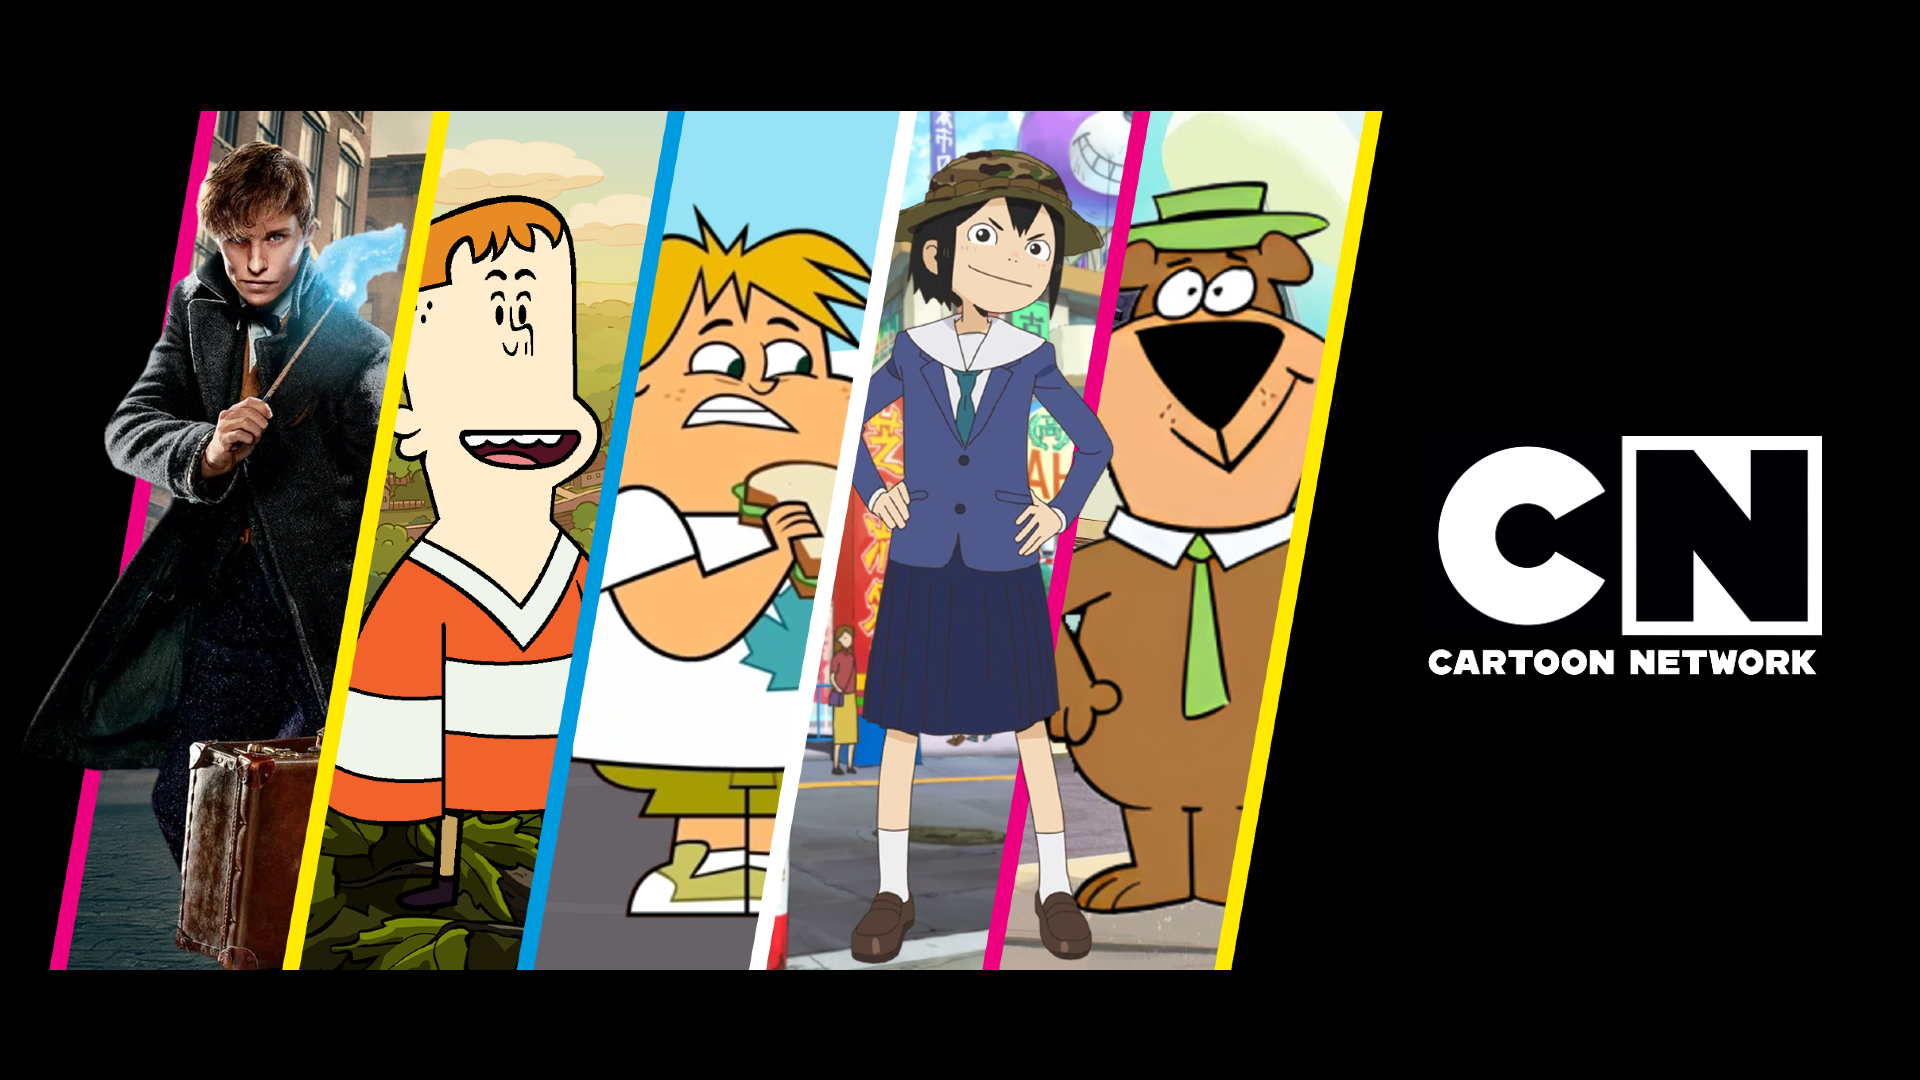 Atención, campistas! El reboot de Isla del Drama llegaría a Cartoon Network  Latinoamérica en agosto - TVLaint